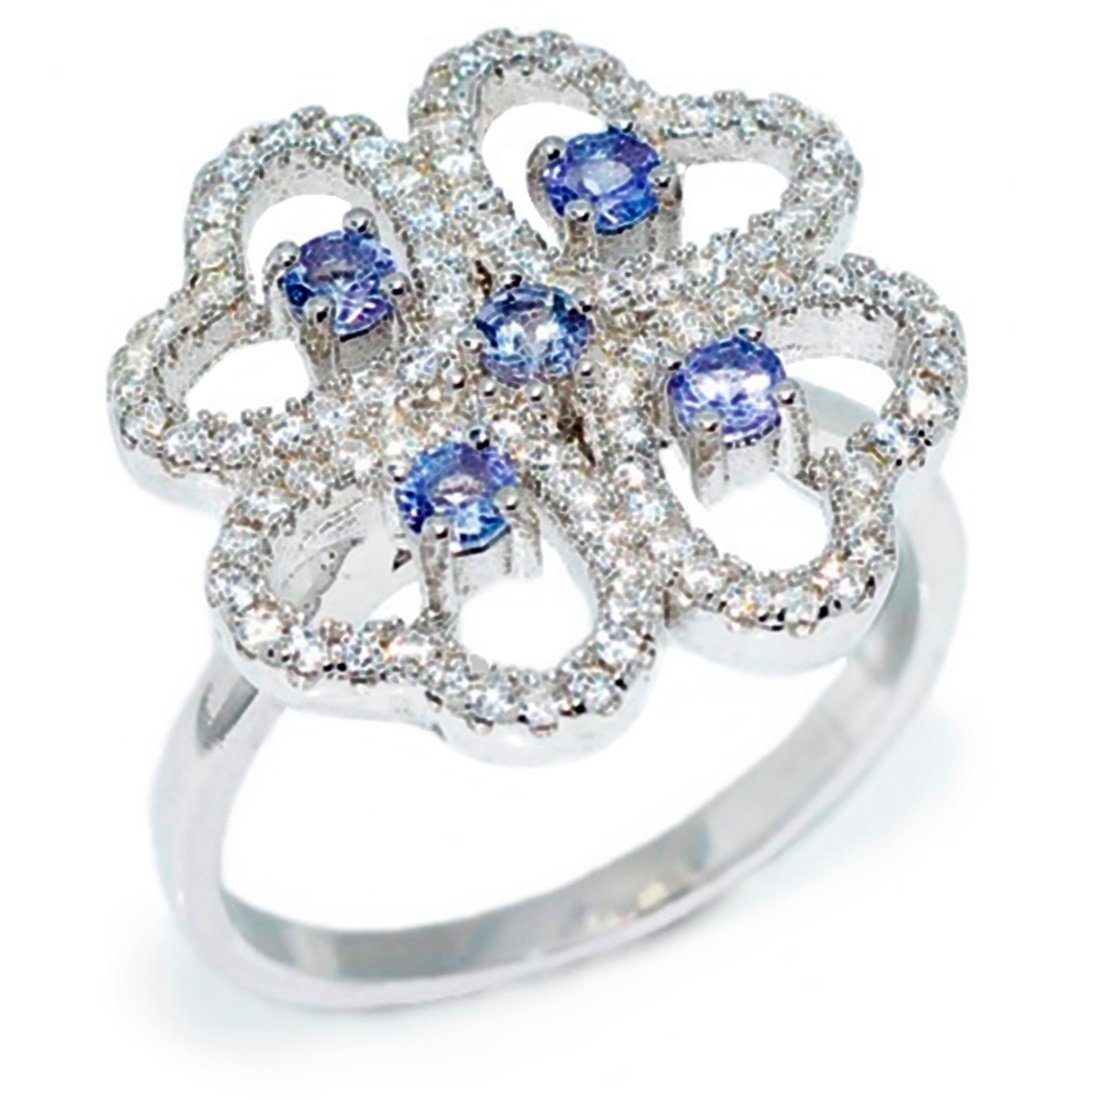 Goldene Hufeisen Silberring Tansanit Ring aus 925 Sterlingsilber Damen echte Edelsteine Herzform, Einzelstück, Handarbeit